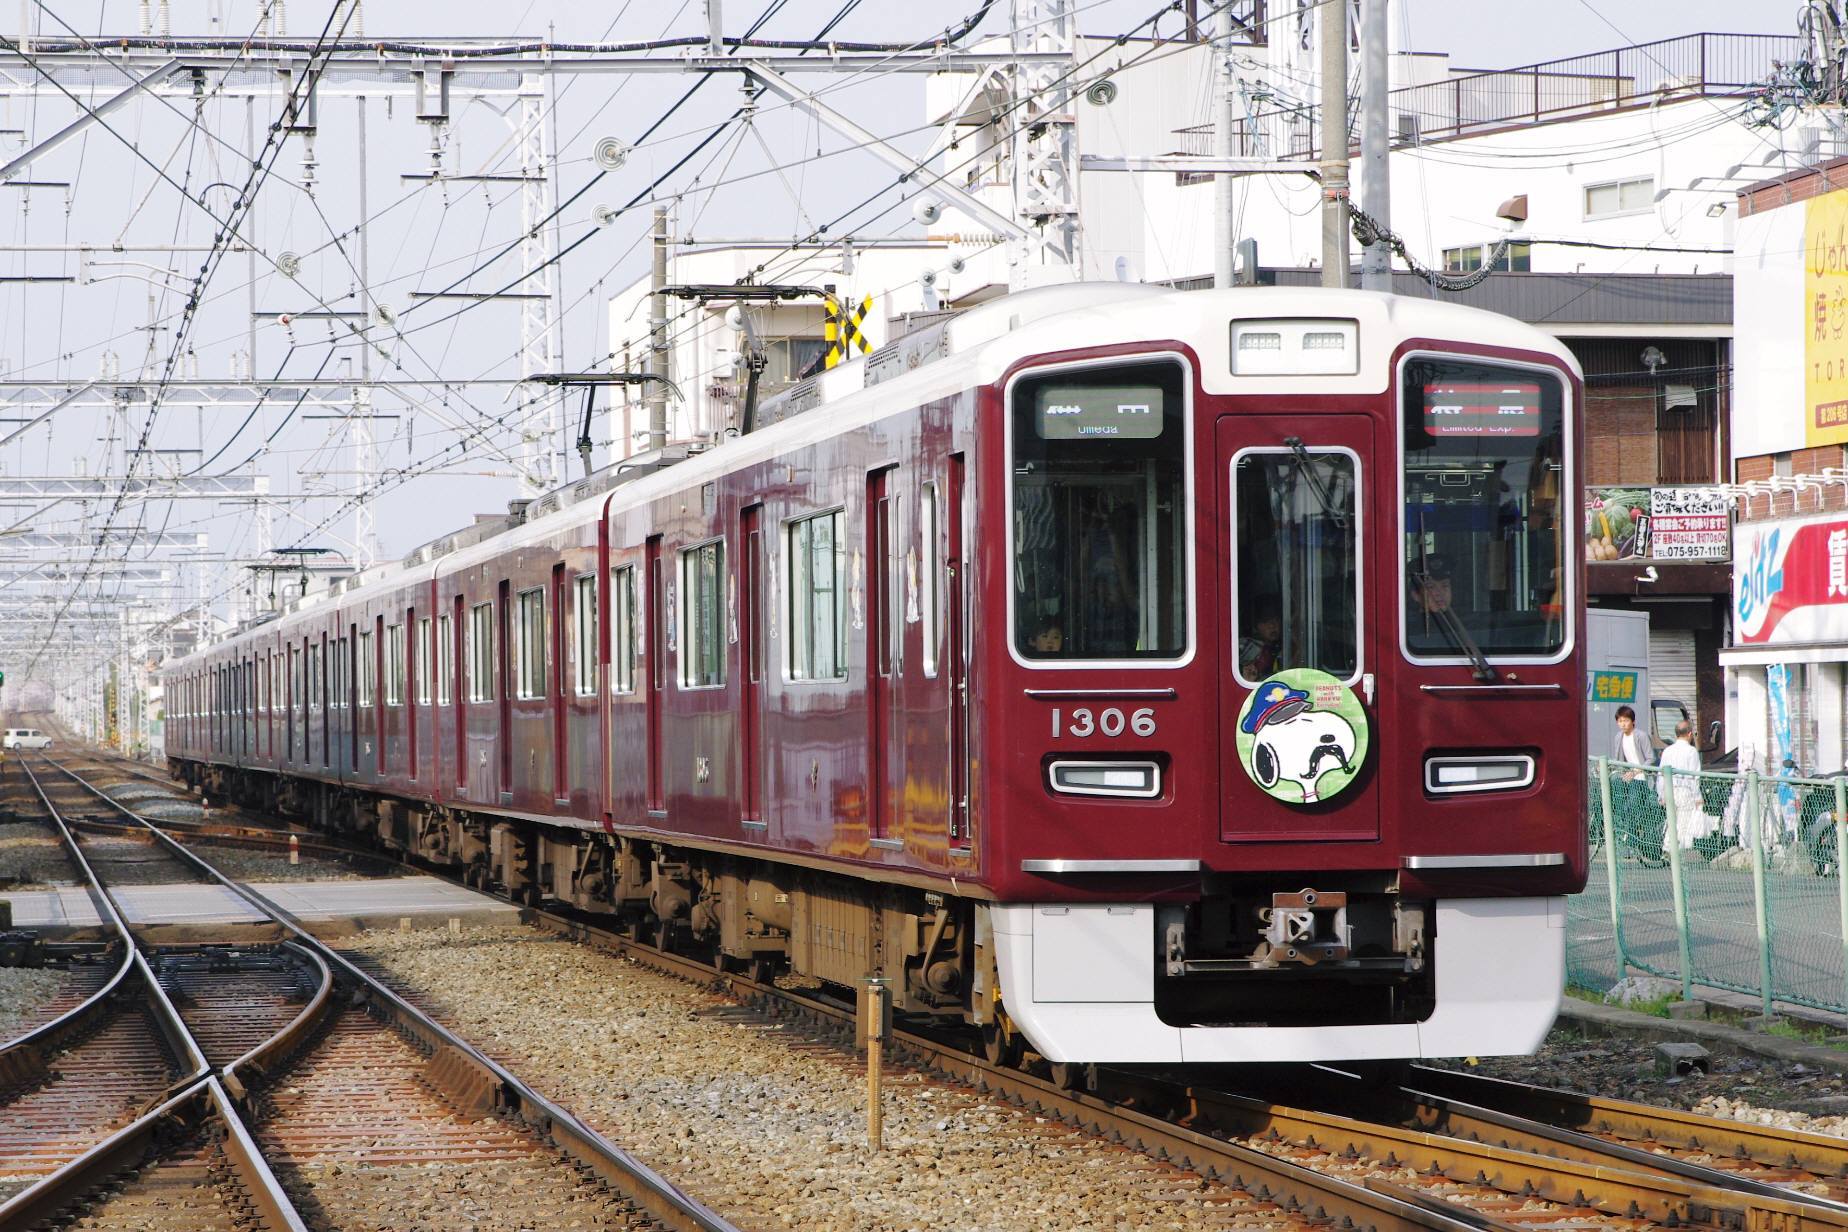 阪急電車 スヌーピー フレンズ号 18 阪急京都線仕様 さまよう旅人の鉄道写真館